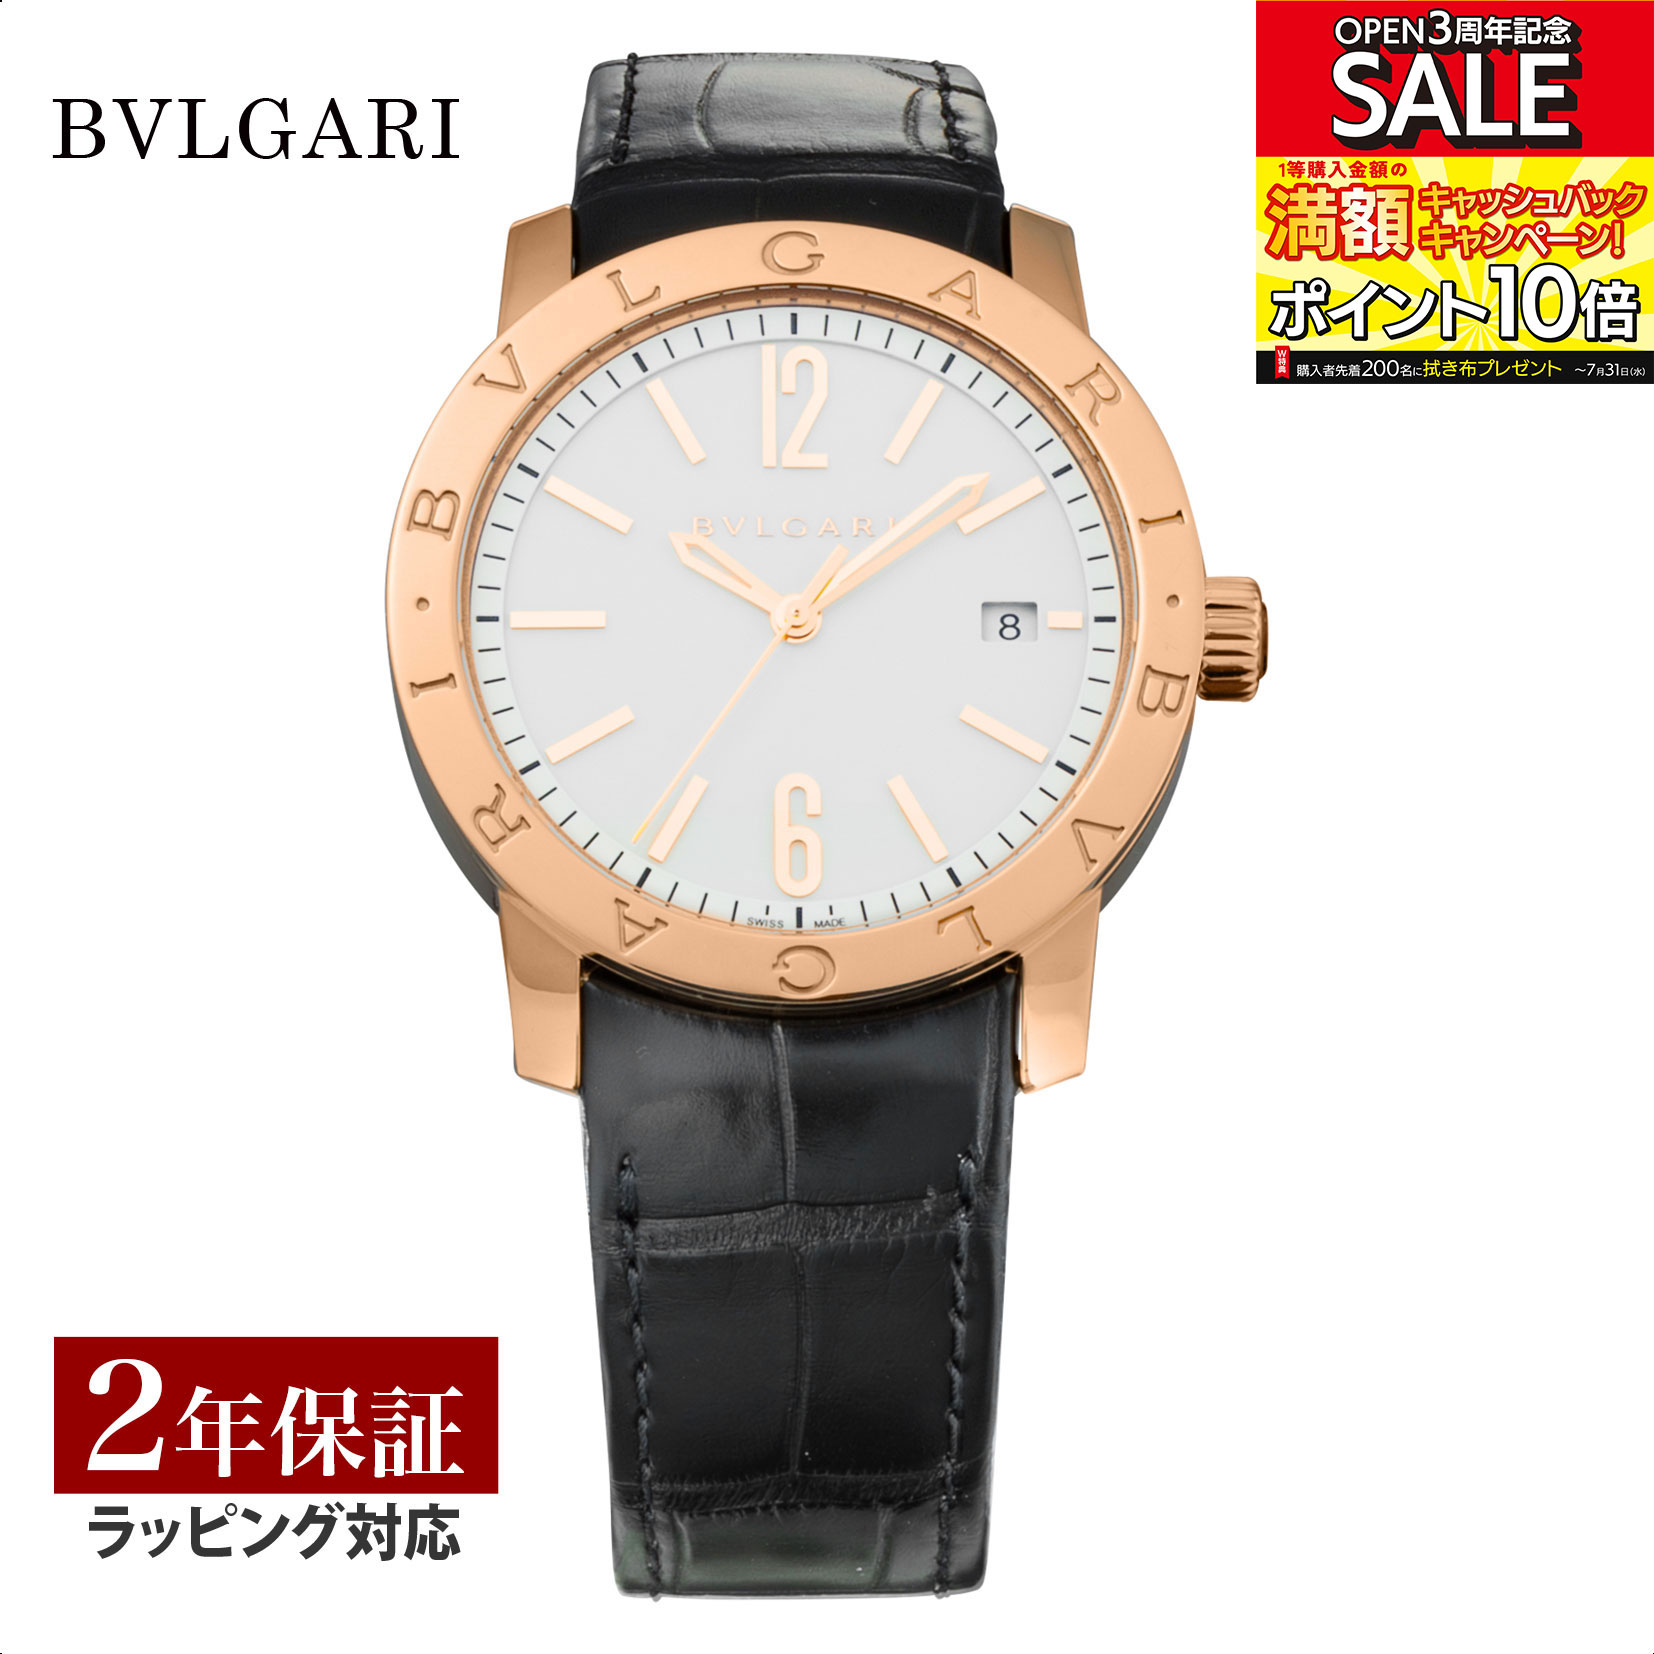 ブルガリブルガリ 腕時計（メンズ） 【レビューでブルガリディナー券】ブルガリ BVLGARI メンズ 時計 Bvlgari Bvlgari ブルガリブルガリ 自動巻 ホワイト BBP39WGLD 時計 腕時計 高級腕時計 ブランド